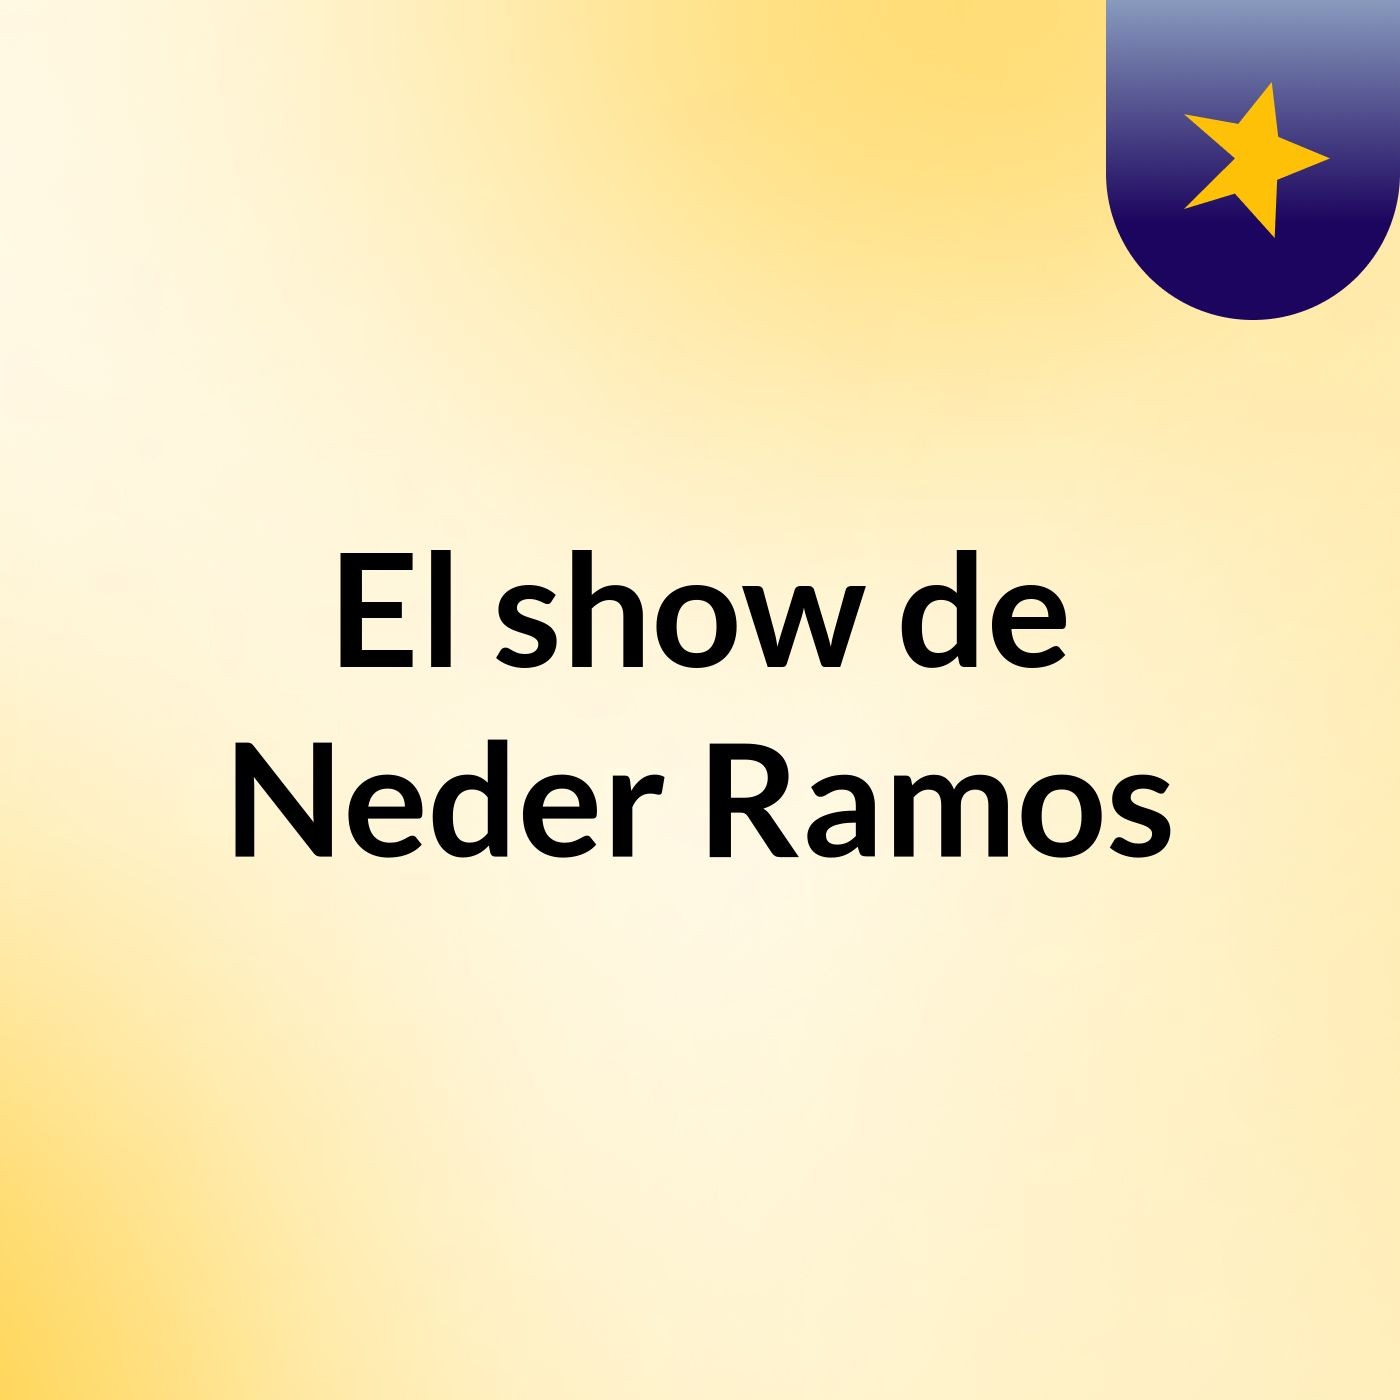 El show de Neder Ramos